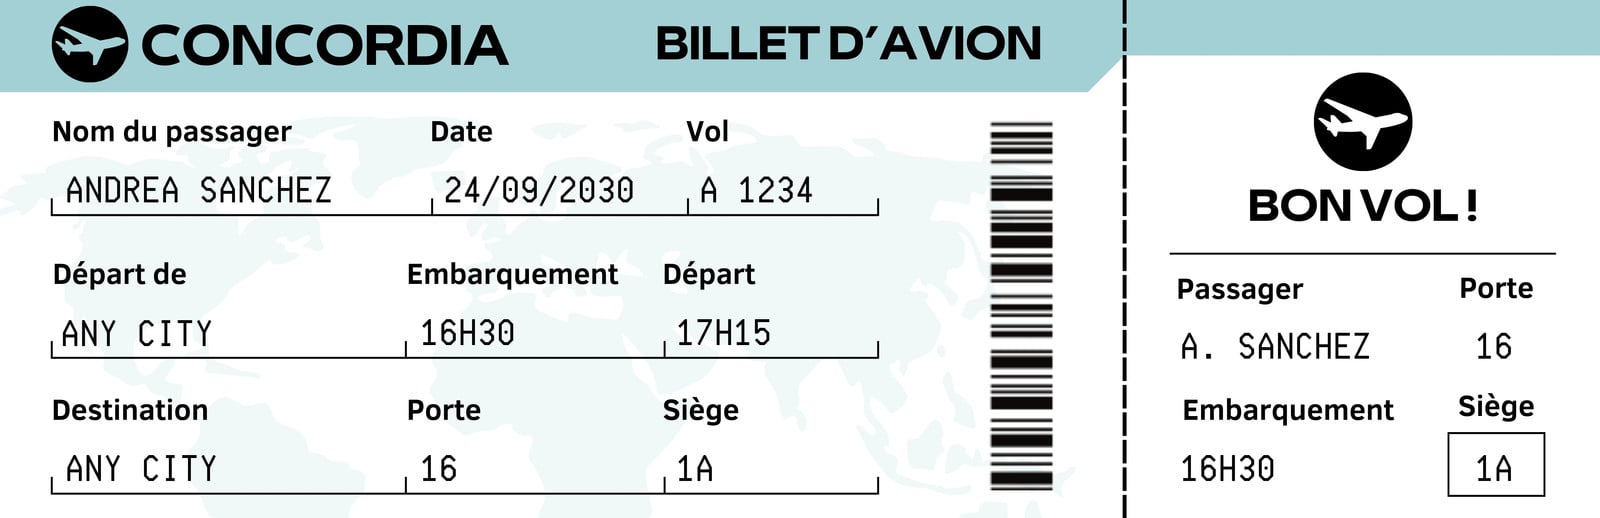 Billet avion personnalisable à gratter Carte d'embarquement surprise  personnalisée annonce voyage originale cadeau noel vacances séjour